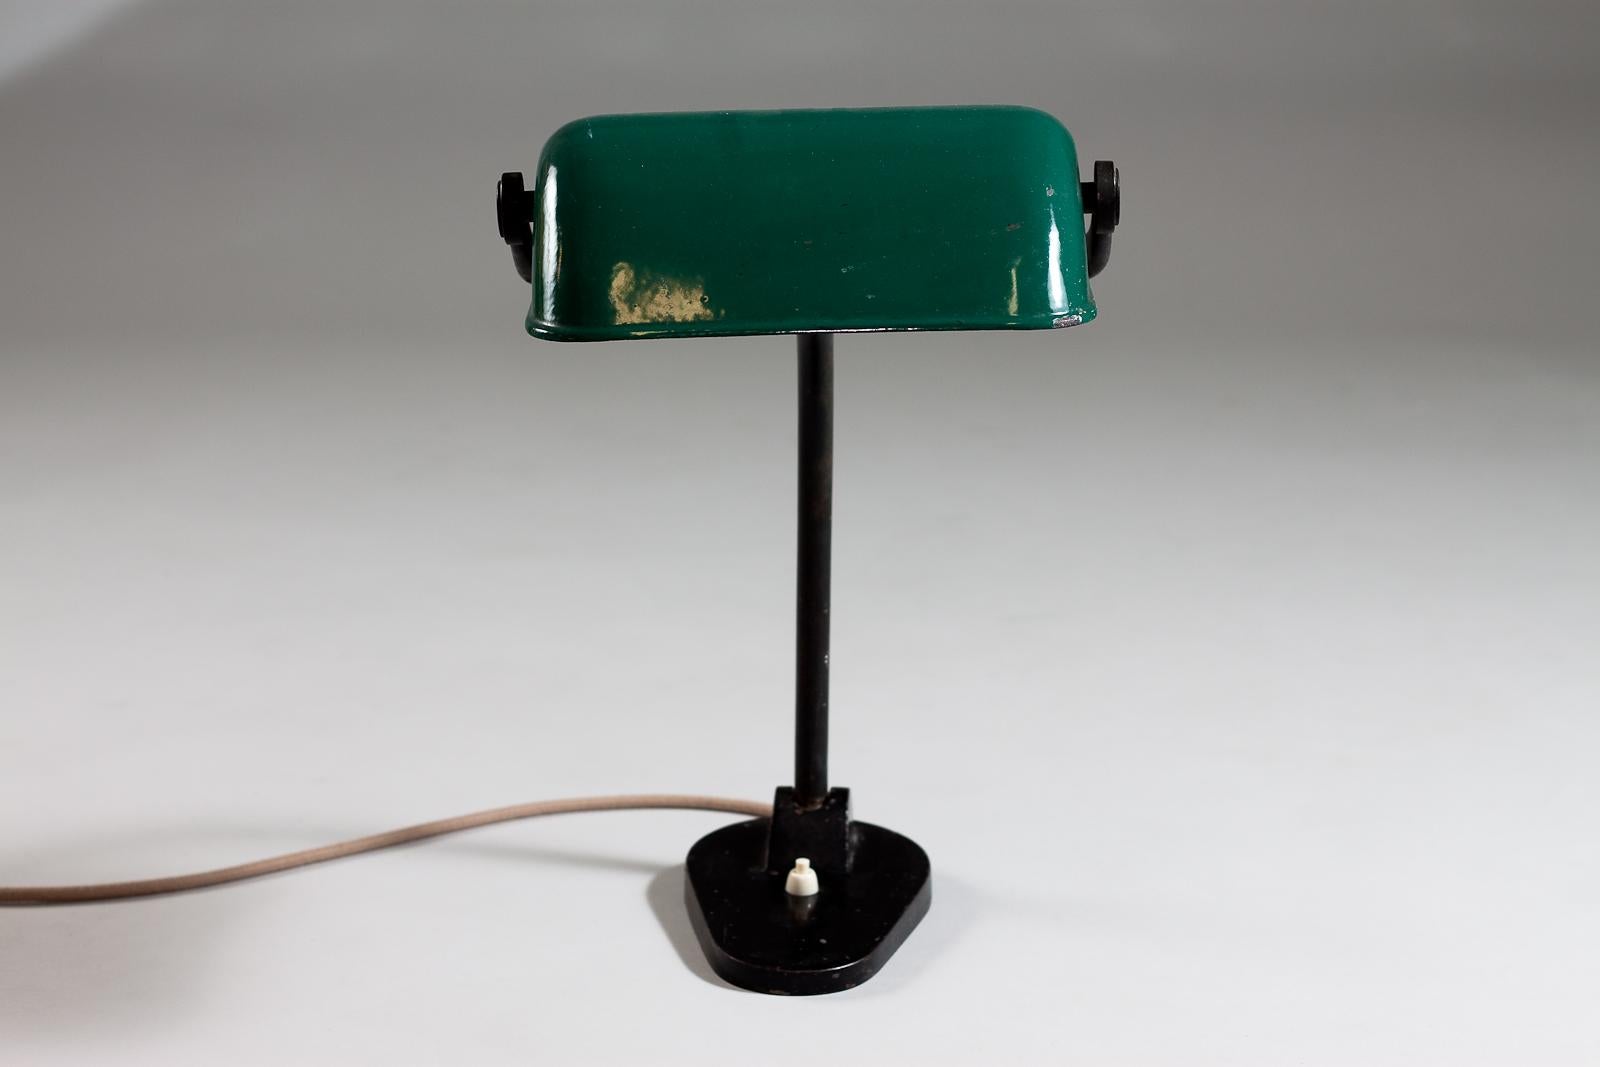 Remontez le temps avec cette superbe lampe de table des années 1930 du célèbre designer finlandais Paavo Tynell. Cette lampe exquise a été produite pour Taito Oy, l'un des premiers pionniers des producteurs d'éclairage finlandais. La silhouette